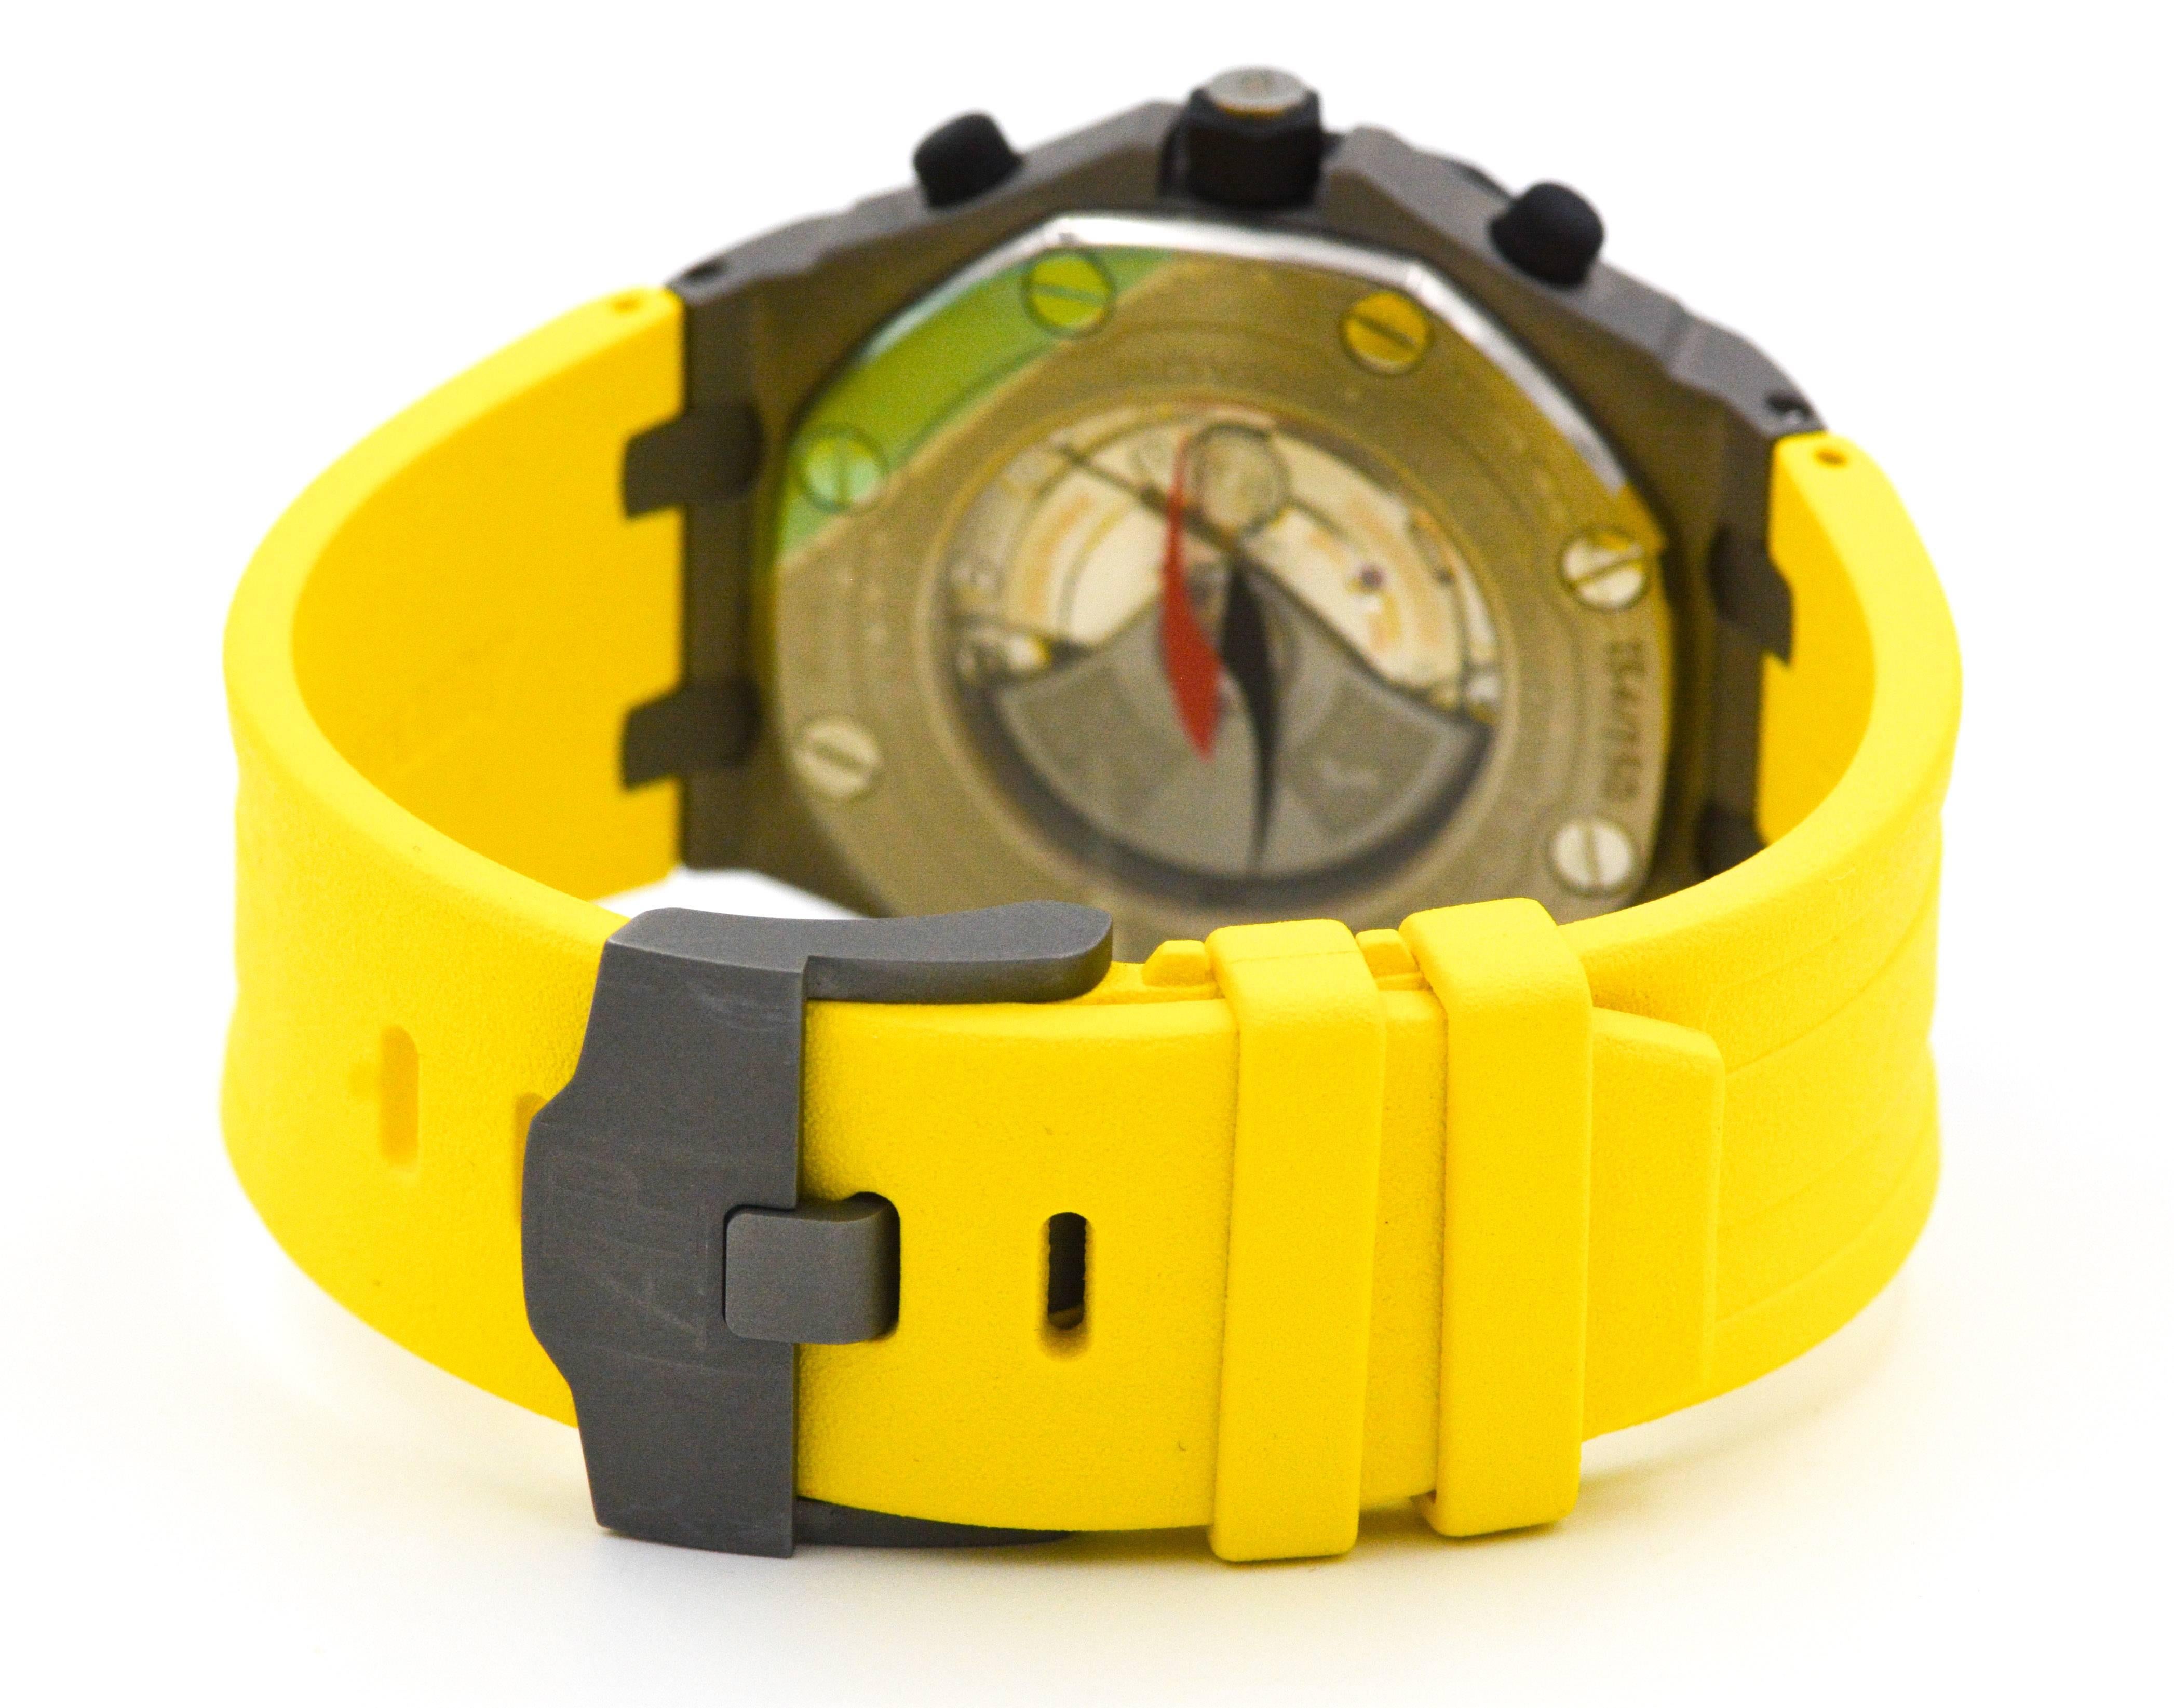 Audemar Piguet titanium Royal Oak Off Shore Limited Edition Automatic Wristwatch 2